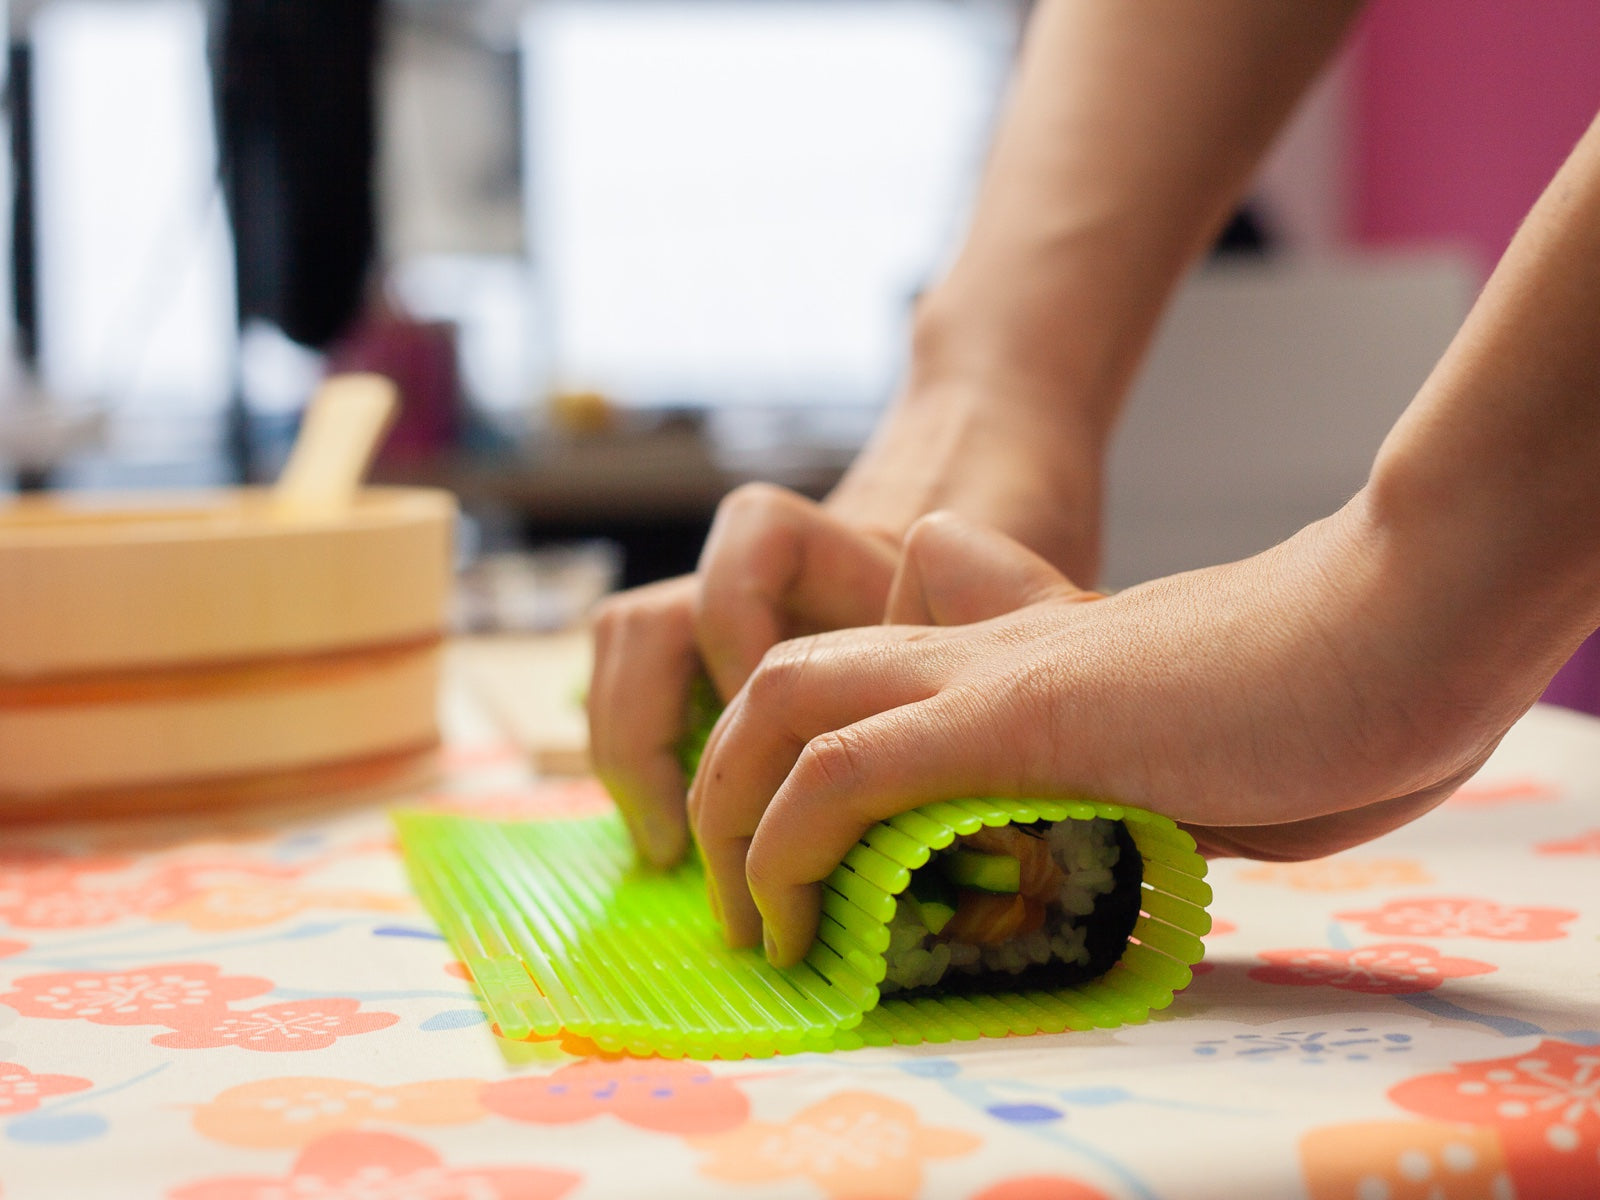 Plastic Professional Sushi Rolling Mat (Sudare) - Beige Color - HAS